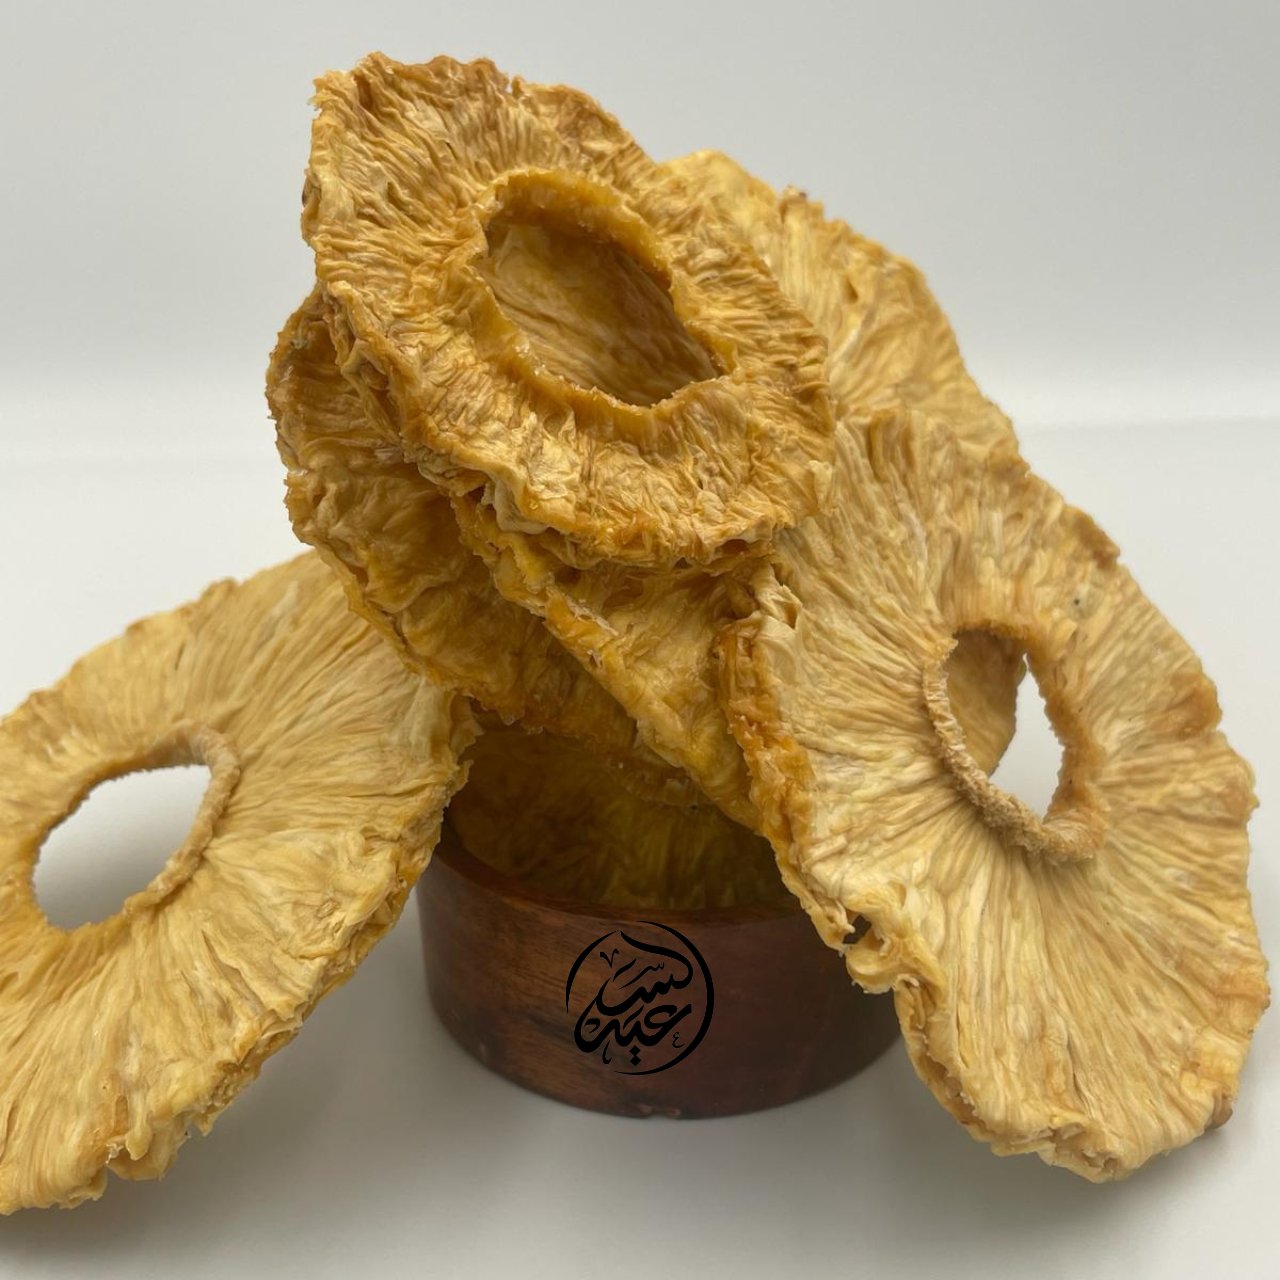 Natural dried pineapple الأناناس المجفف الطبيعي - بهارات و عطارة السعيد